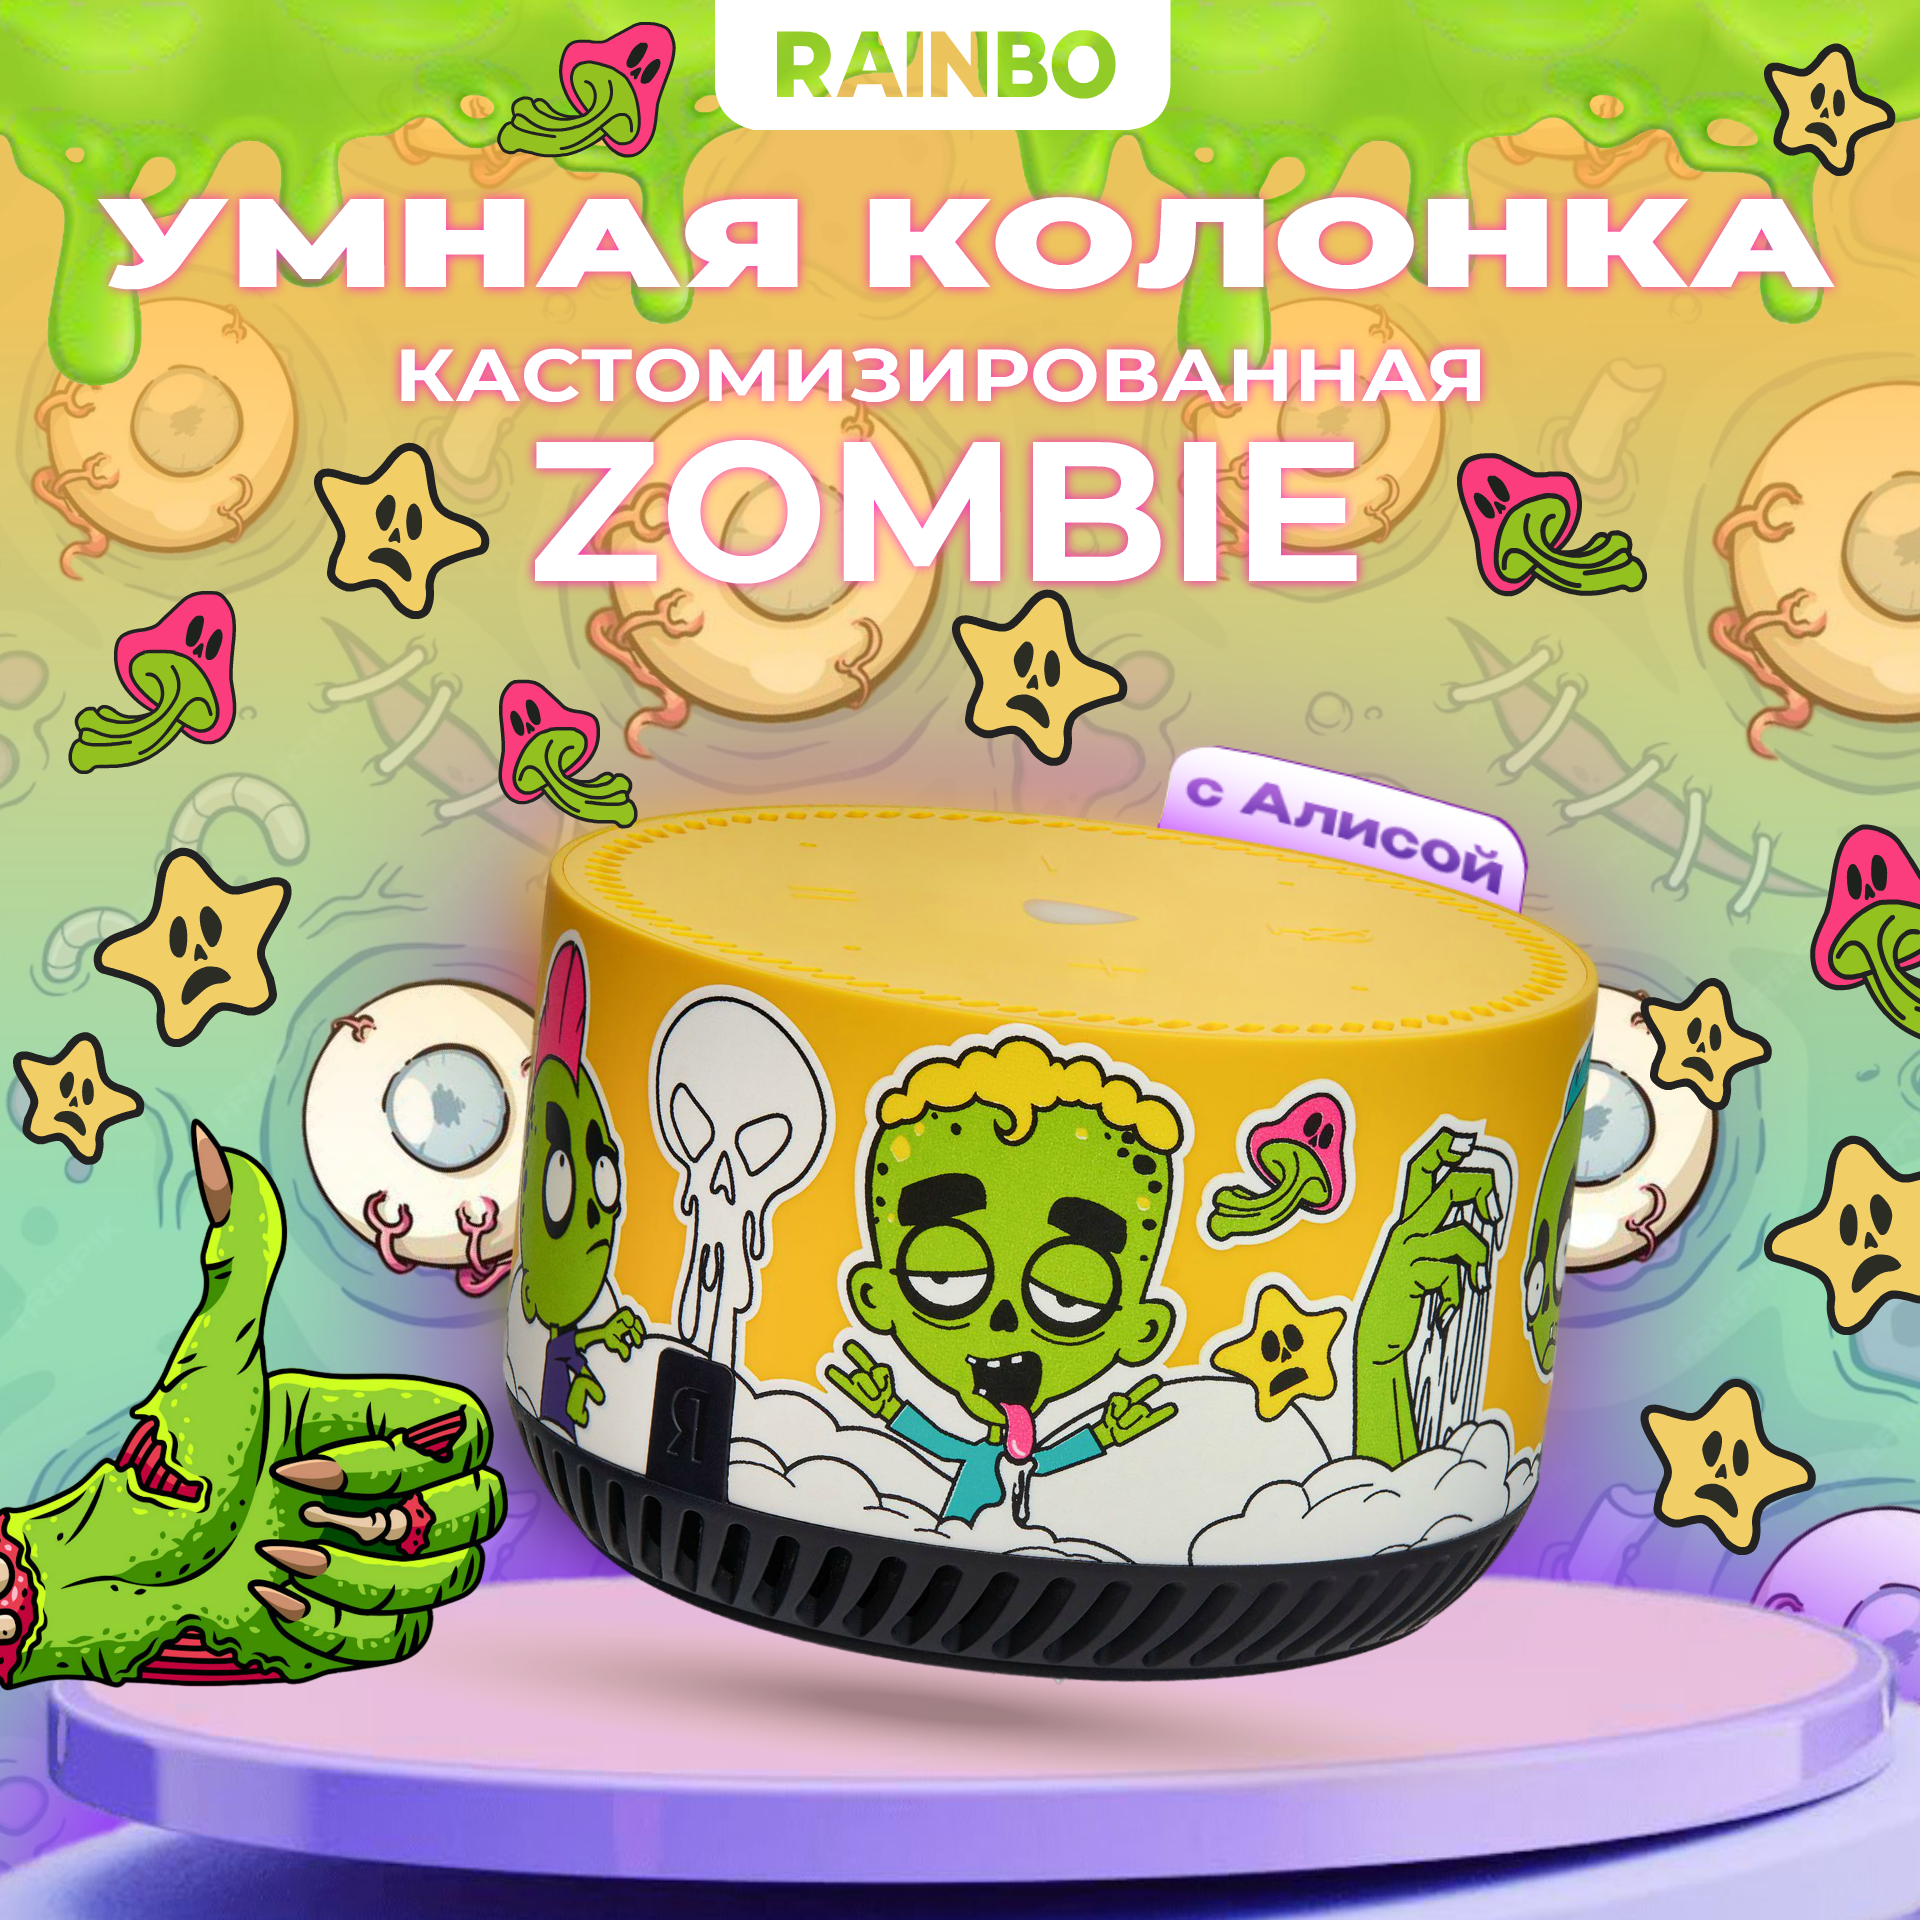 Умная колонка RAINBO Яндекс Станция Лайт Rainbo "Zombie"